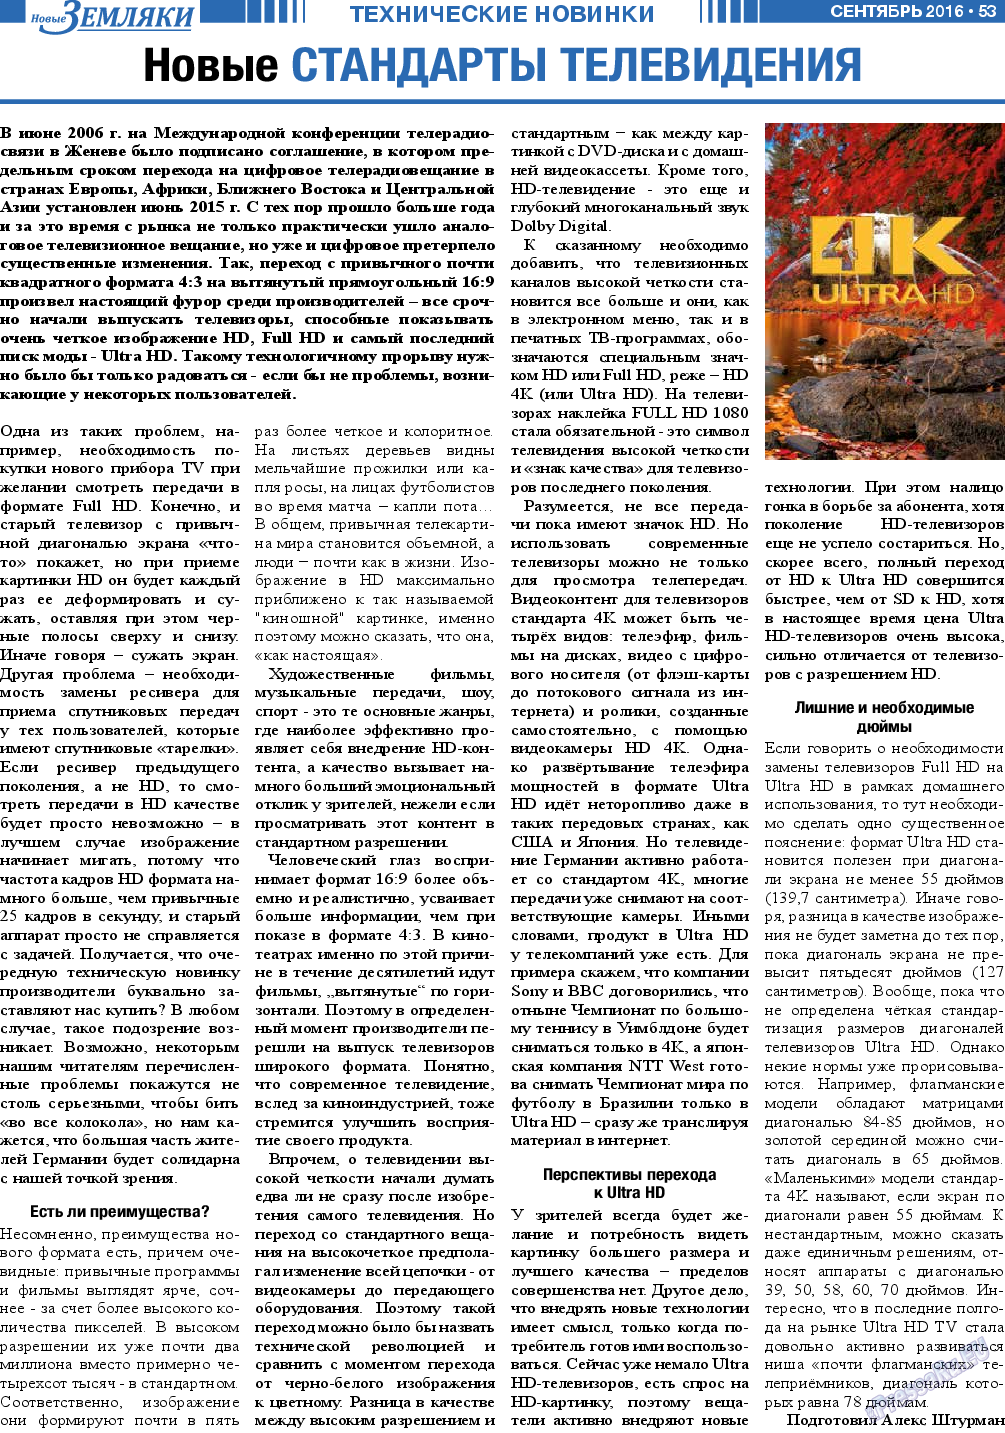 Новые Земляки, газета. 2016 №9 стр.53